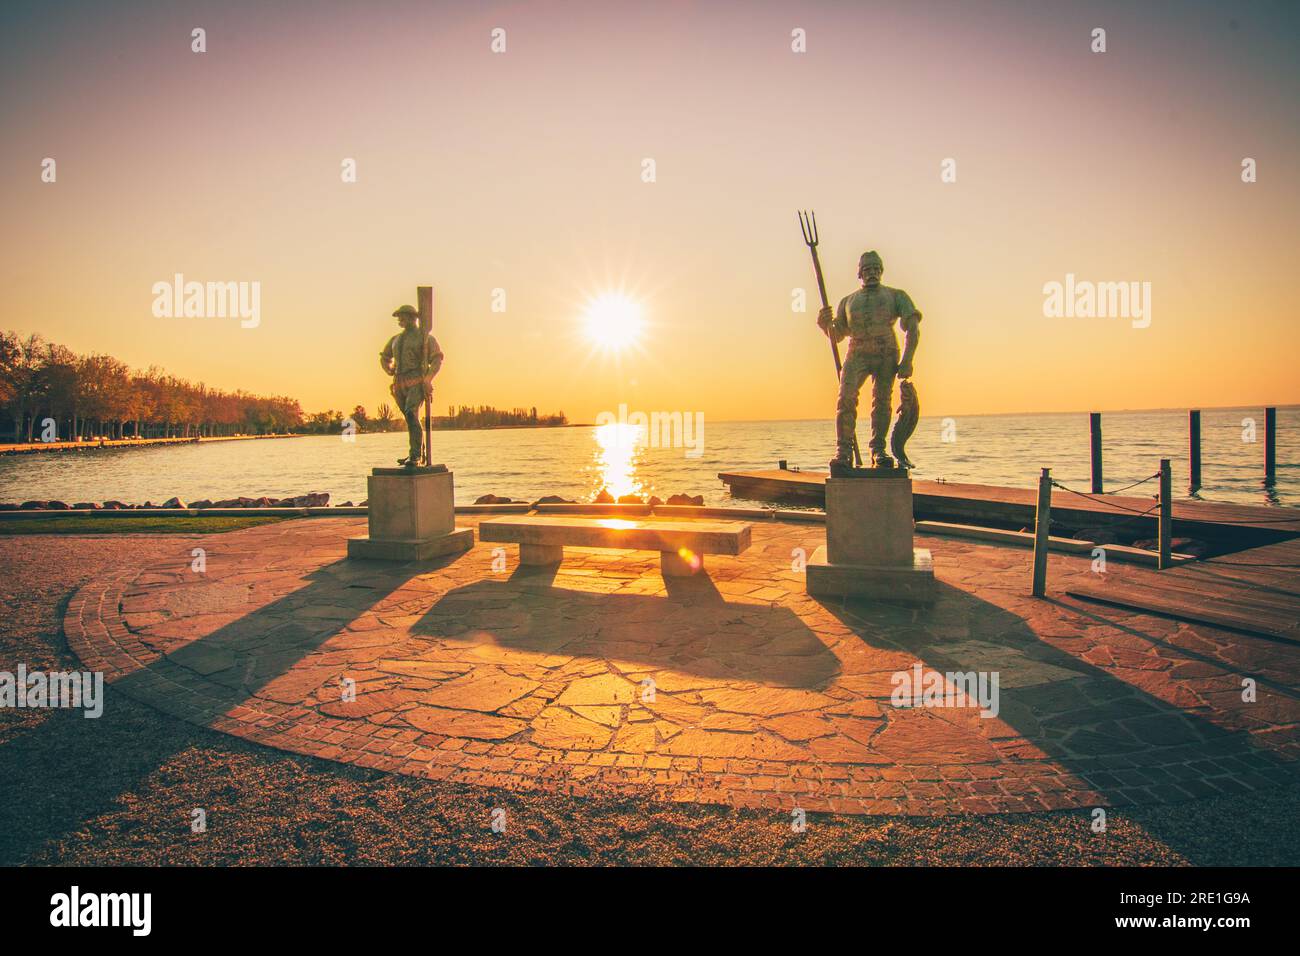 Encantadora salida del sol en el lago Balaton, Hungría - Captura de la belleza escénica Foto de stock